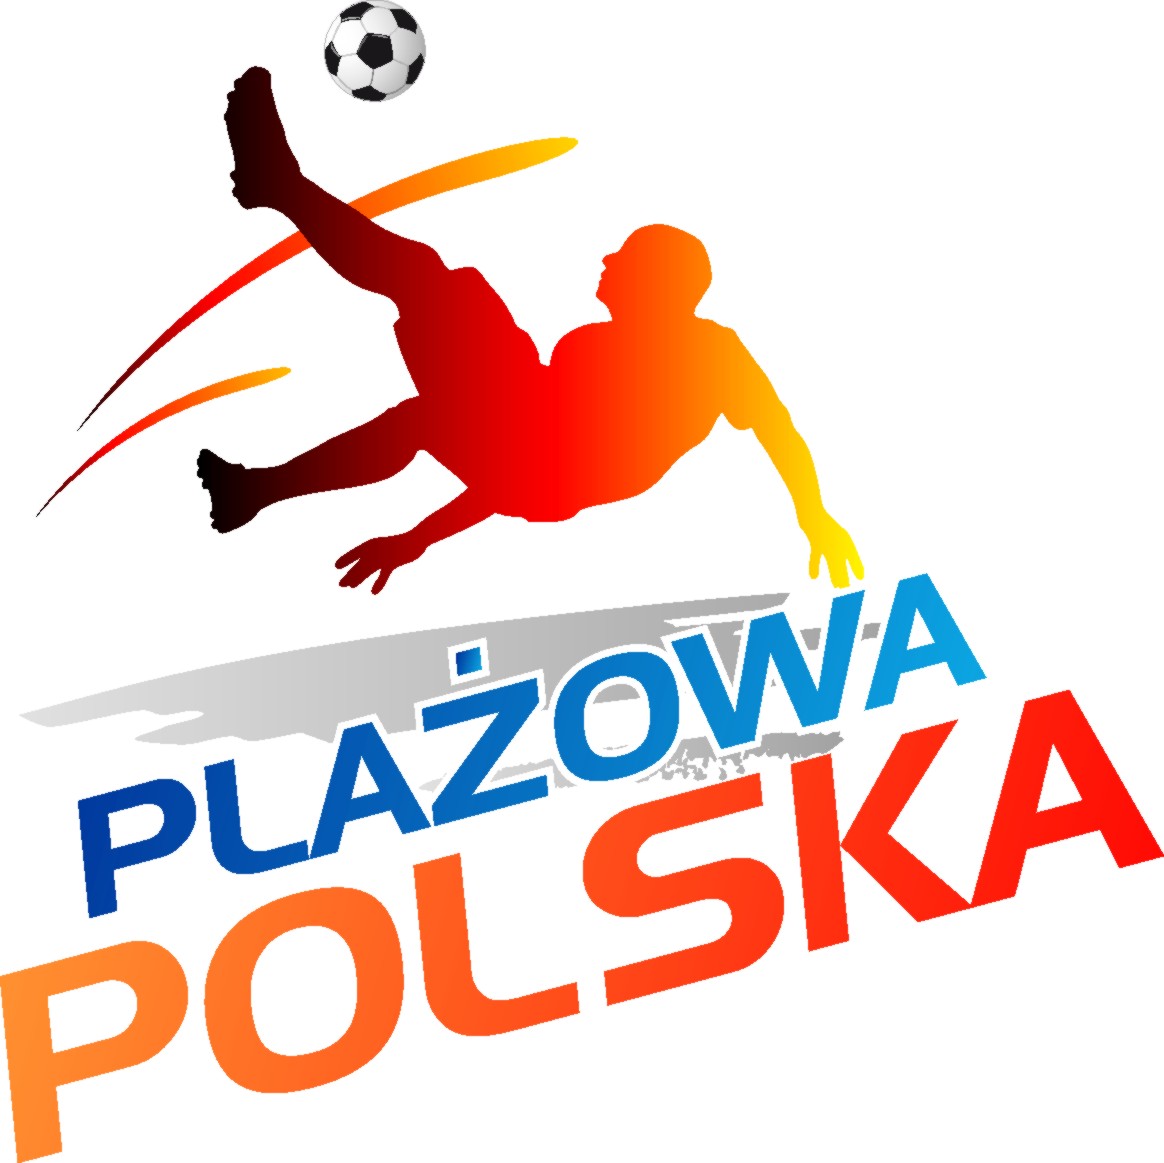 Plazowa_Polska_Logo